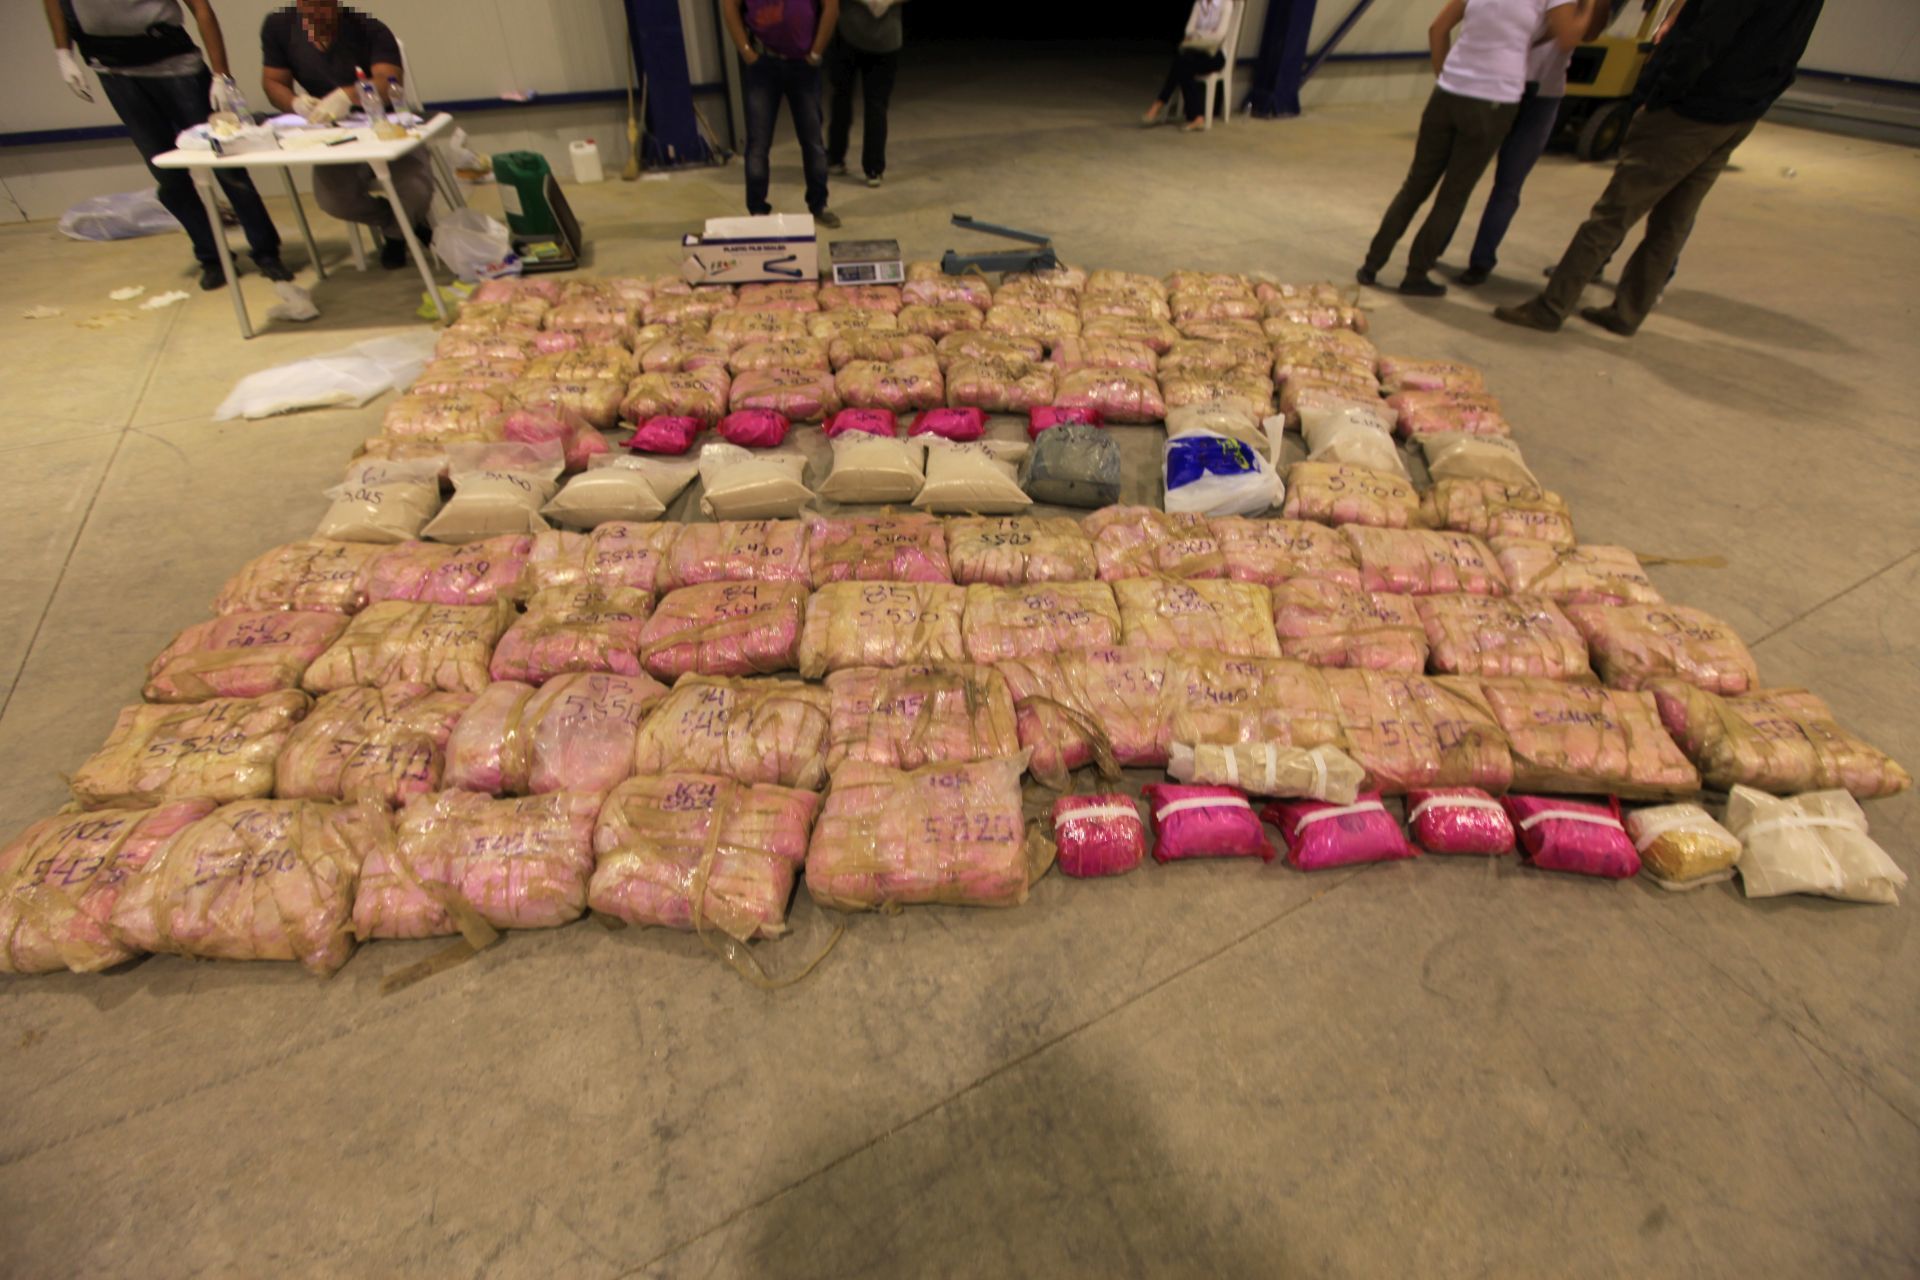 Άλλος ένας τόνος ηρωίνης βρέθηκε σε αποθήκη στο Κορωπί  – Μπλόκαραν το πλοίο που μετέφερε τα ναρκωτικά στην Ελευσίνα – Συνελήφθησαν 14 άτομα